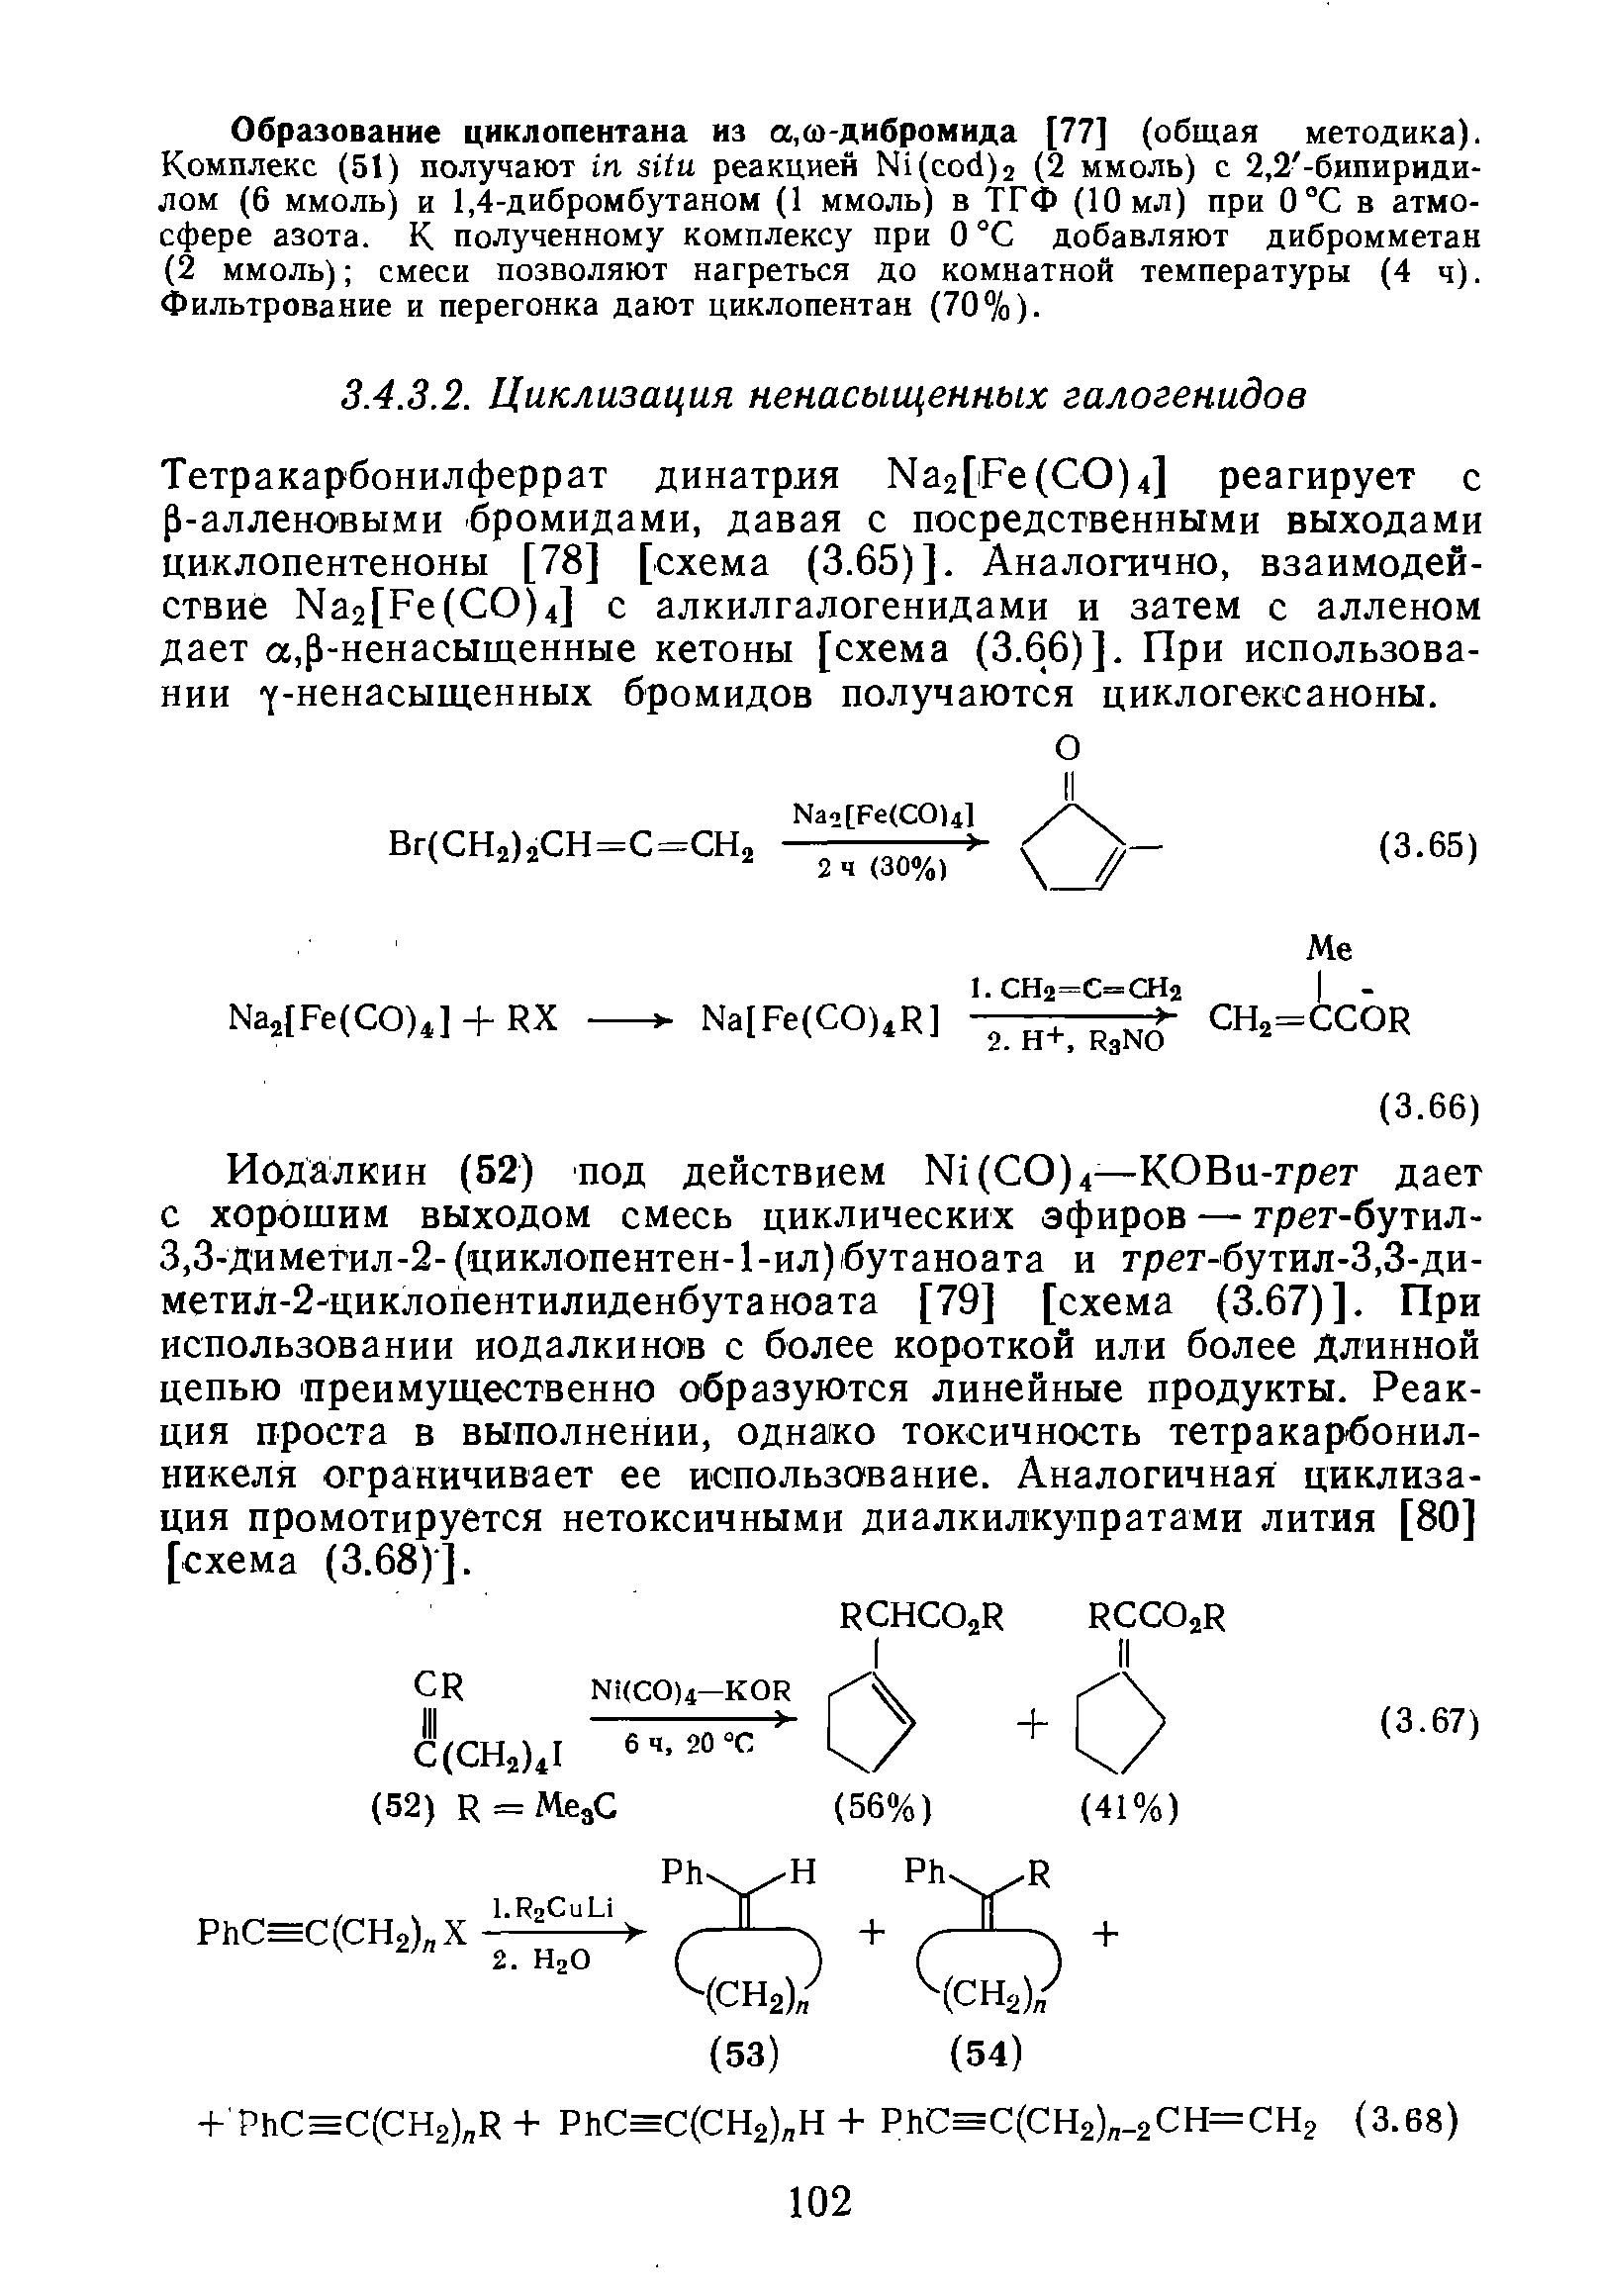 Образование циклопентана из а,ш-дибромида [77] (общая методика). Комплекс (51) получают п зИи реакцией Ы1(со(1)2 (2 ммоль) с 2,2 -бипириди-лом (6 ммоль) и 1,4-дибромбутаном (1 ммоль) в ТГФ (10мл) при 0°С в атмосфере азота. К полученному комплексу при О °С добавляют дибромметан (2 ммоль) смеси позволяют нагреться до комнатной температуры (4 ч). Фильтрование и перегонка дают циклопентан (70%).